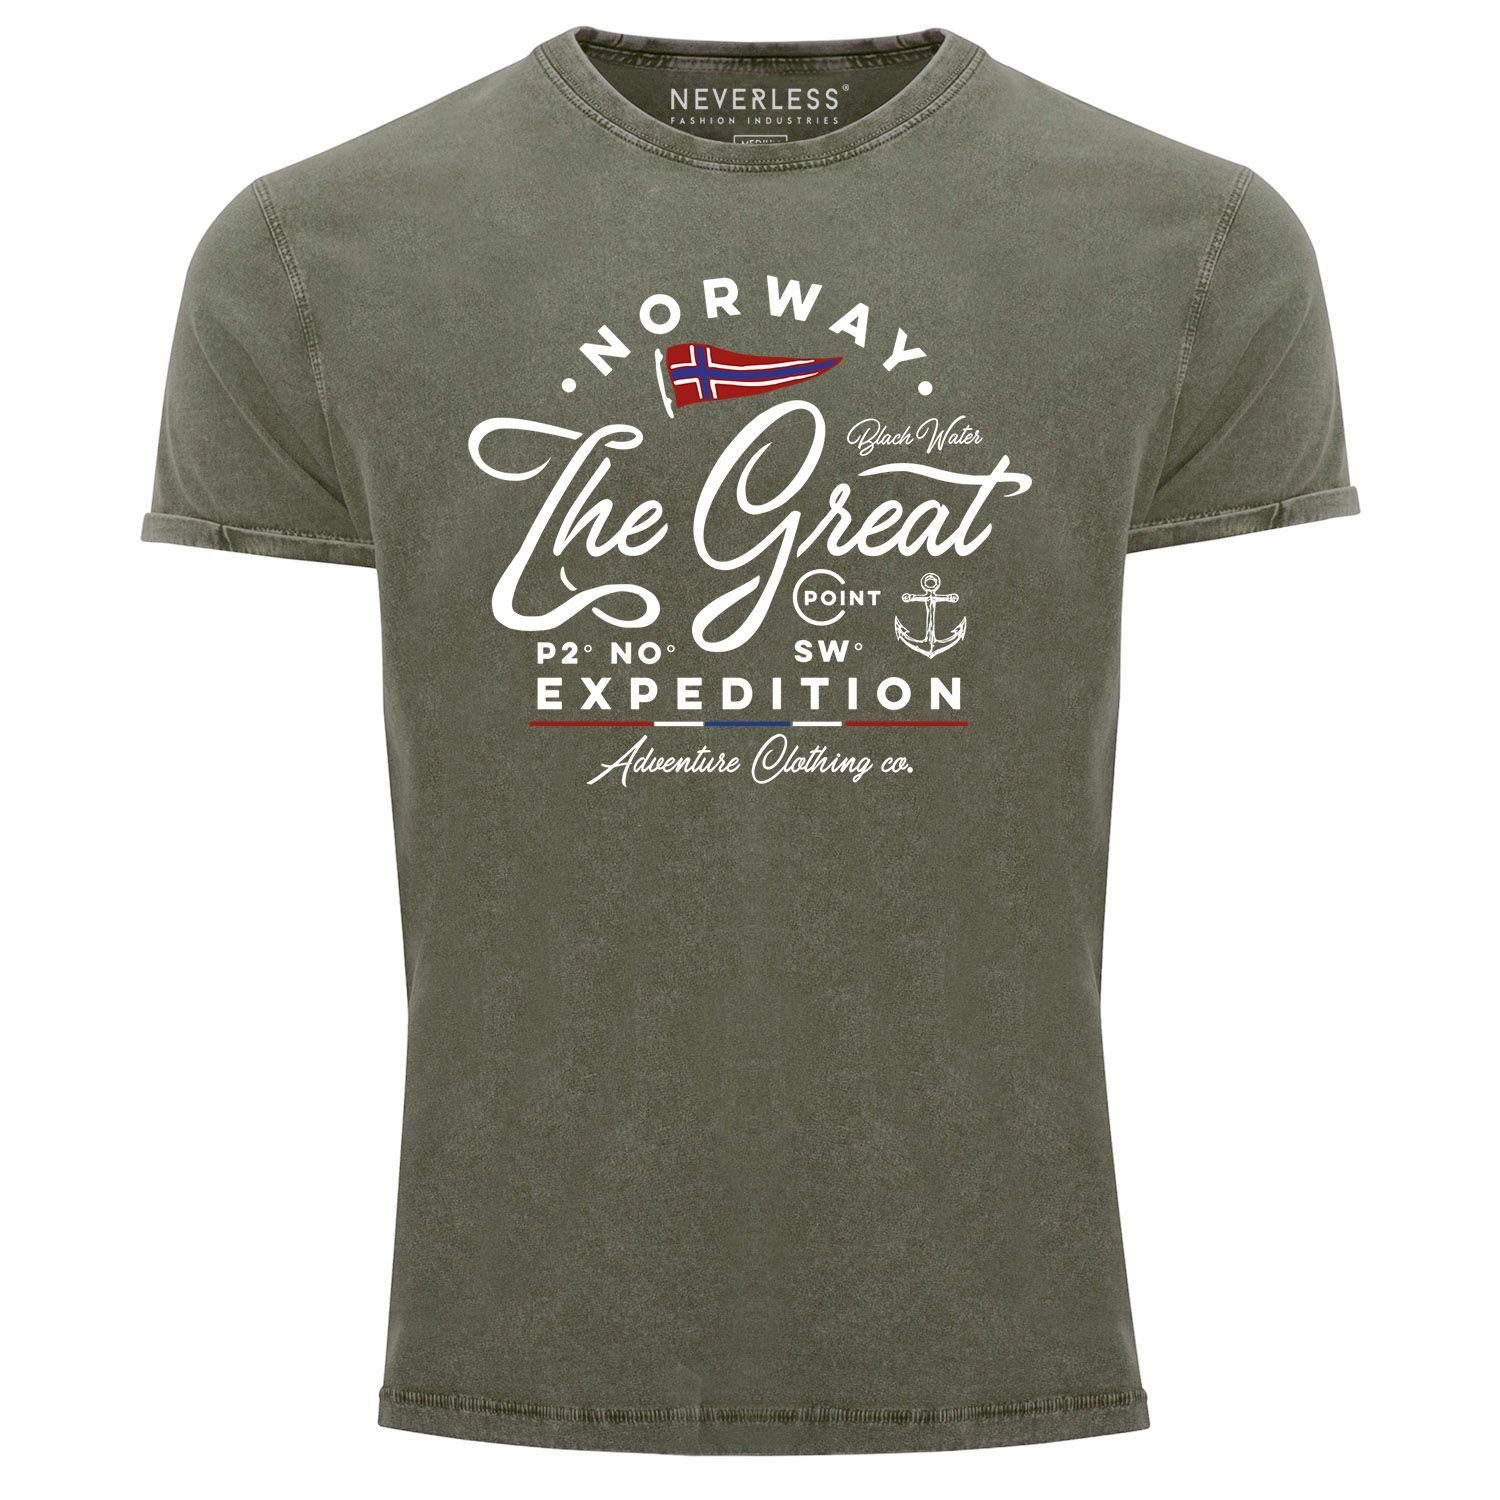 mit Used Expedition Printshirt T-Shirt Neverless Norwegen Great Shirt Vintage Adventure Herren oliv Look Neverless® Print The Print-Shirt Aufdruck Outdoor